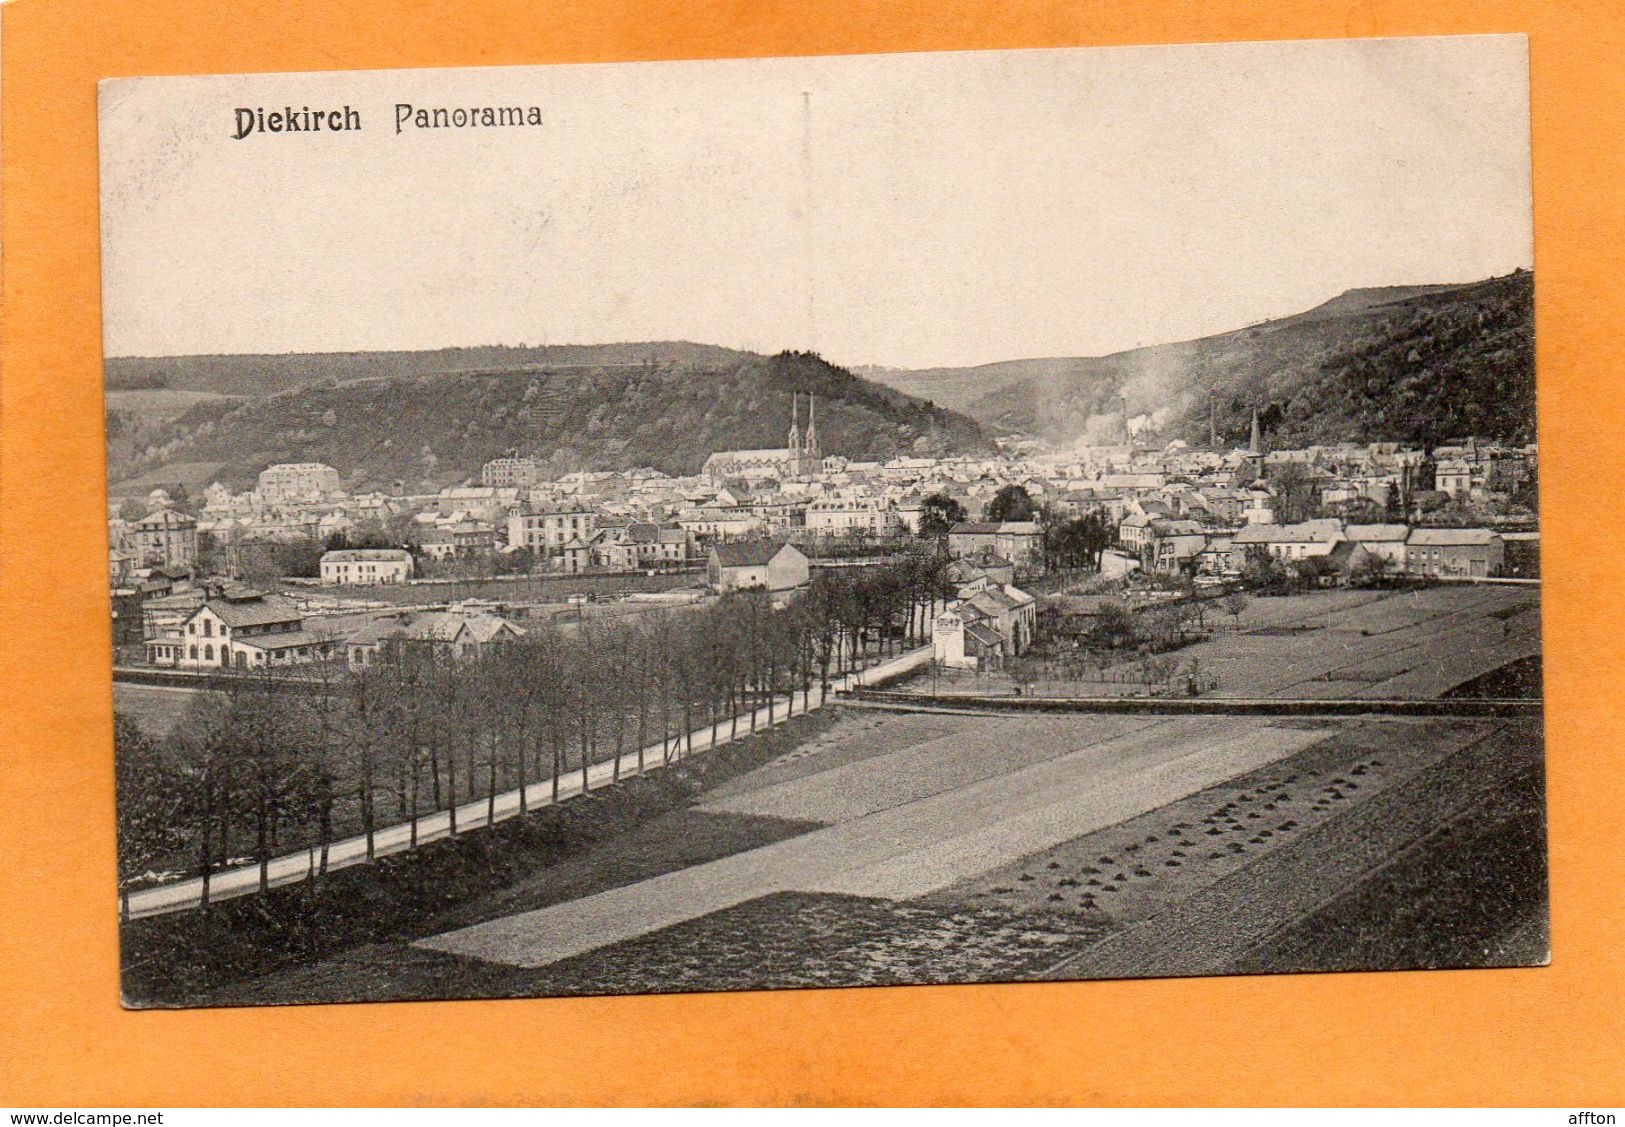 Diekirch 1910 Postcard - Diekirch